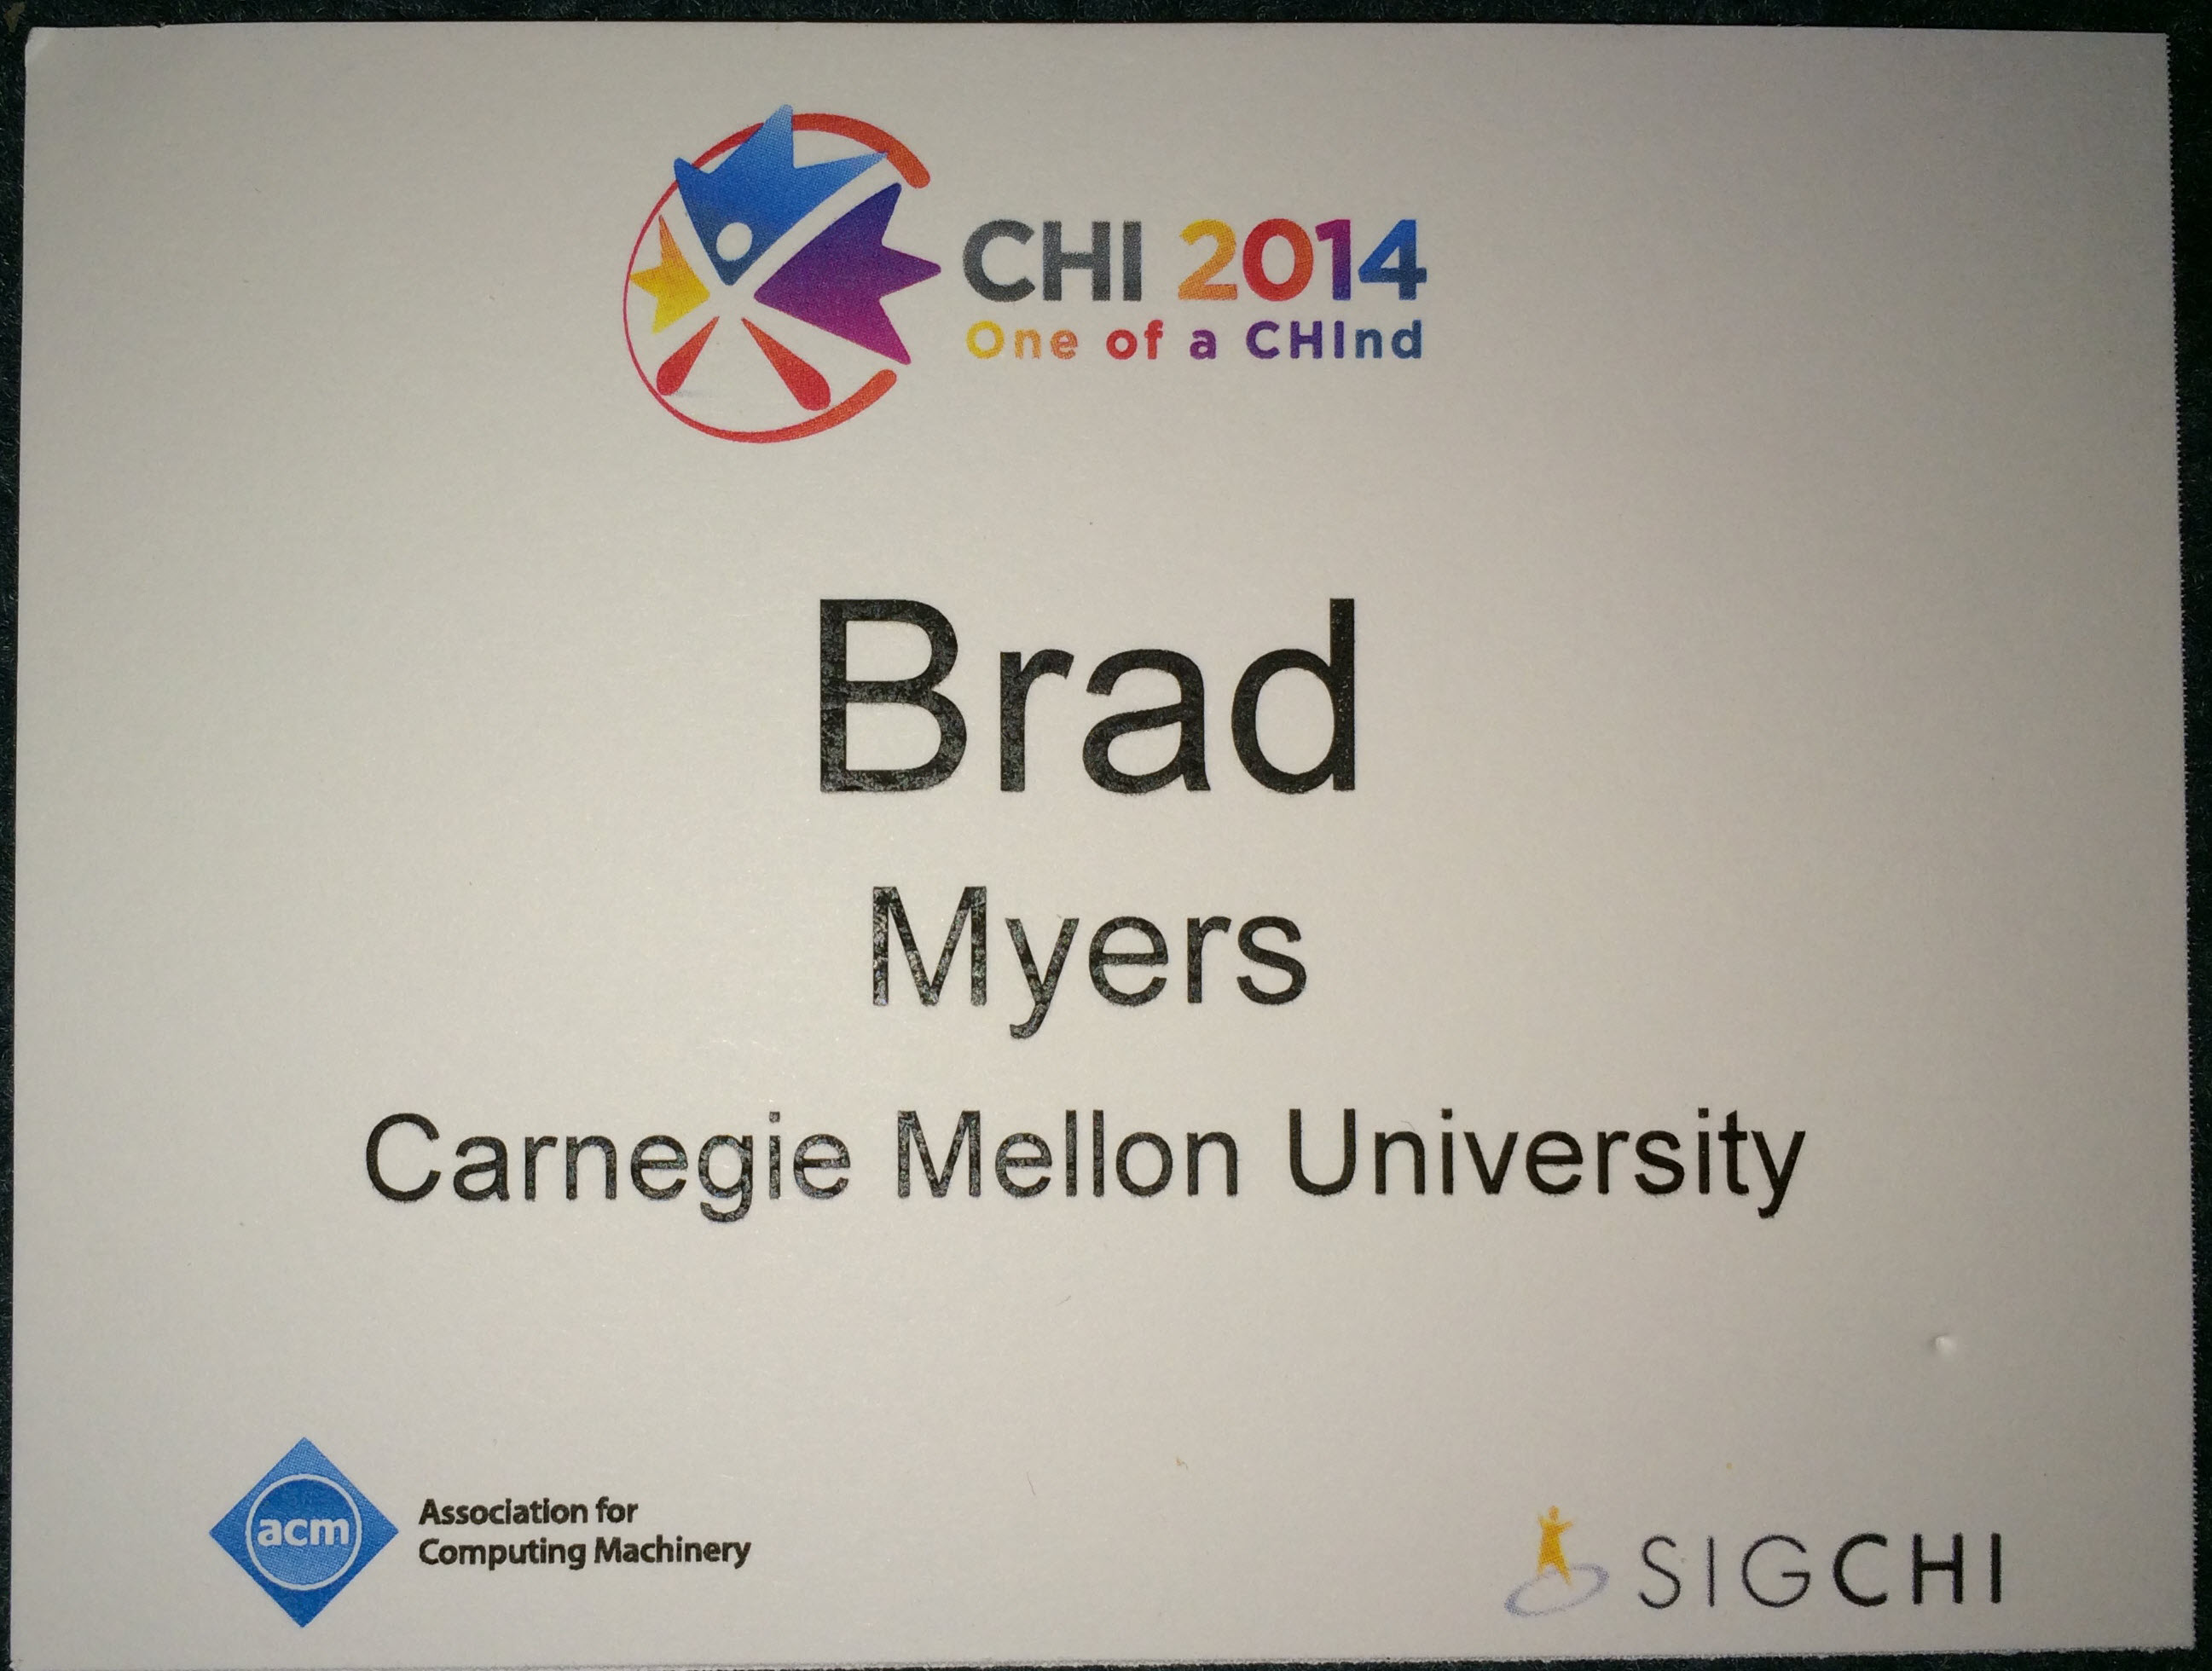 CHI'2014 badge